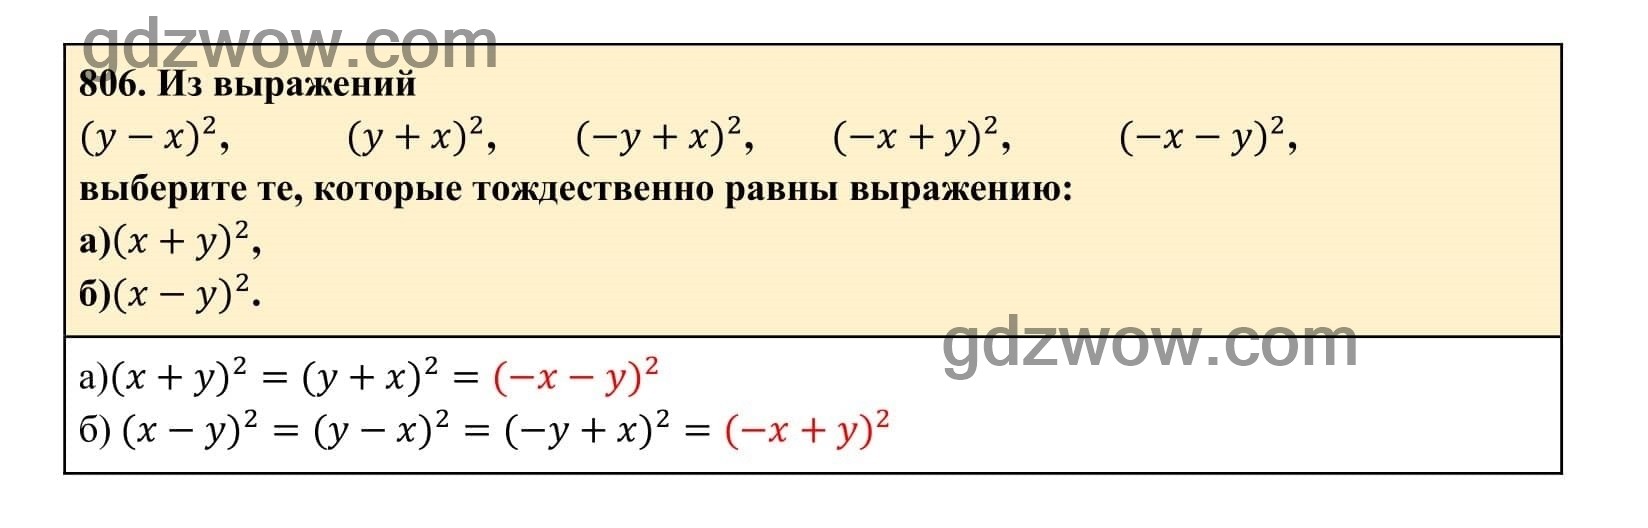 Упражнение 806 - ГДЗ по Алгебре 7 класс Учебник Макарычев (решебник) - GDZwow